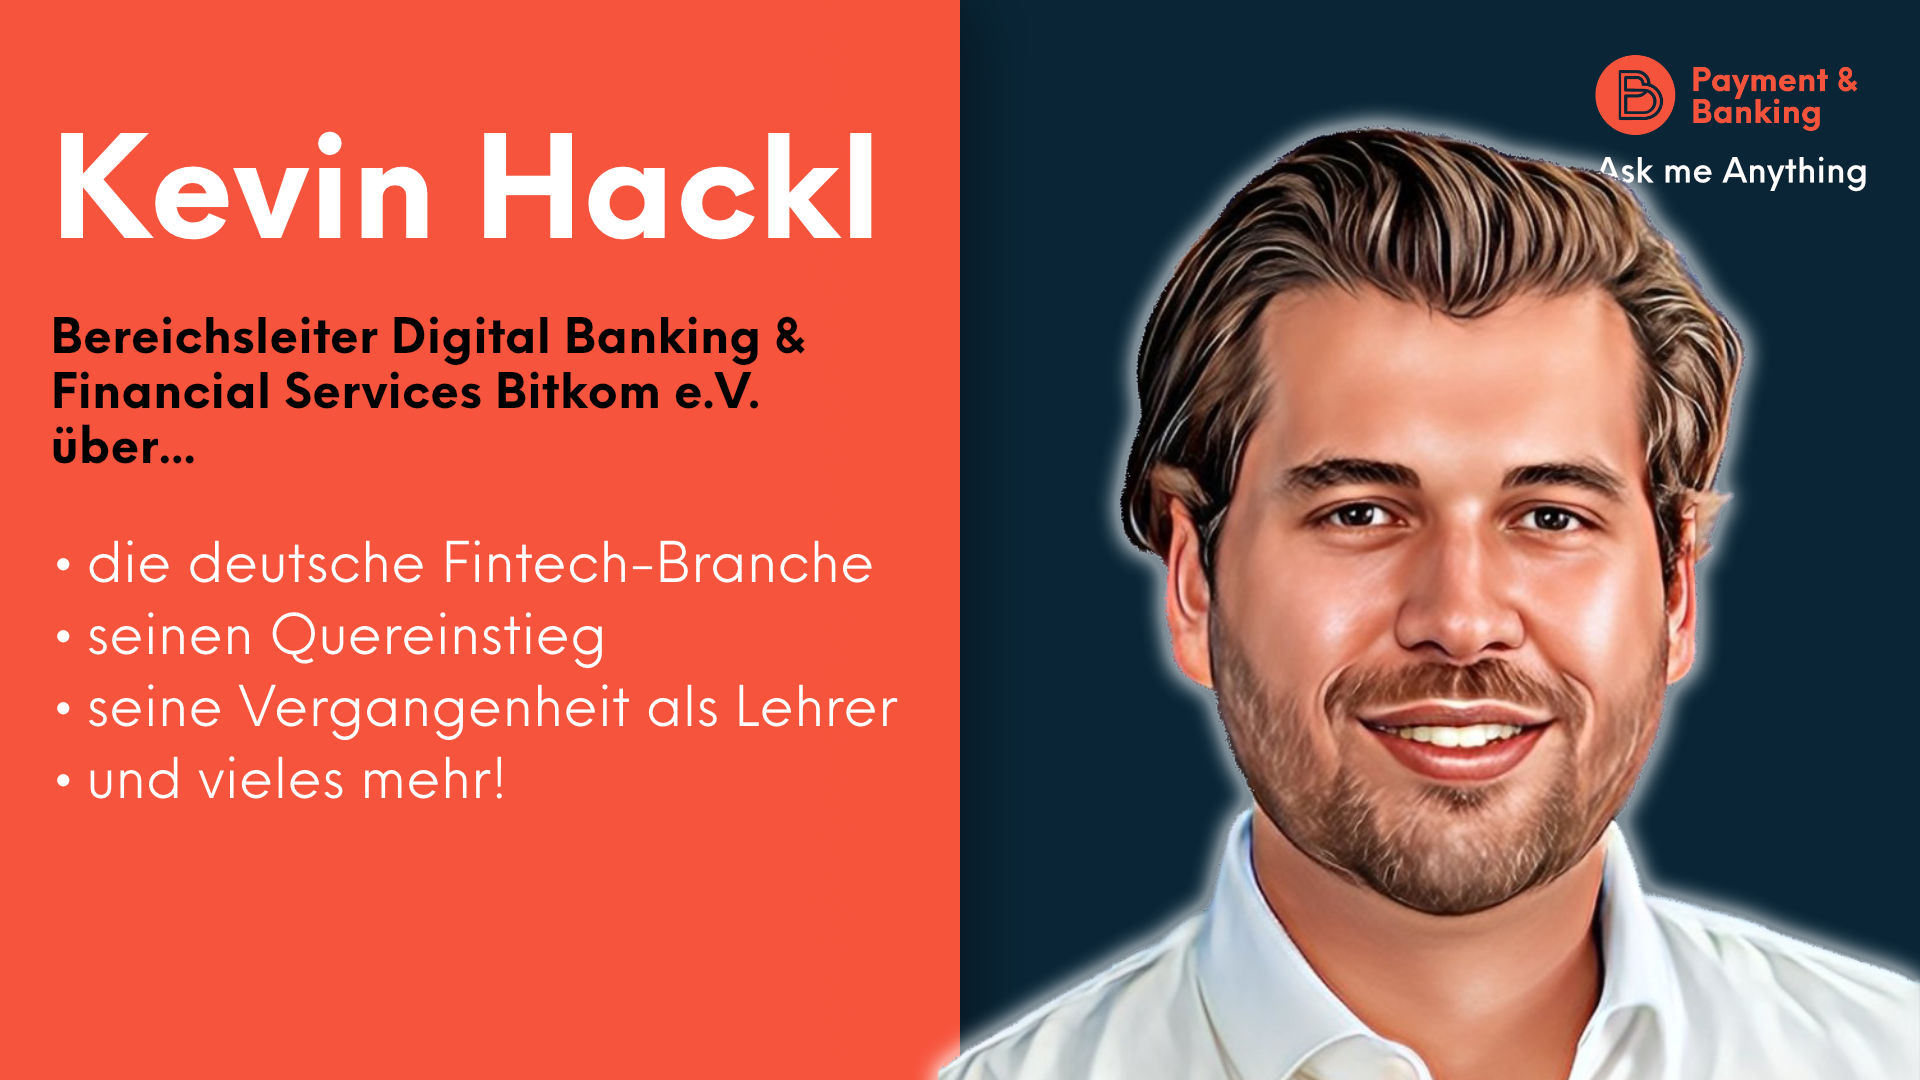 Kevin Hackl ist Bereichsleiter Digital Banking & Financial Services Bitkom e.V. und spricht mit Christina Cassala im AMA über die deutsche Fintech-Branche, seinen Quereinstieg in den Fintech-Zirkus und vieles mehr!